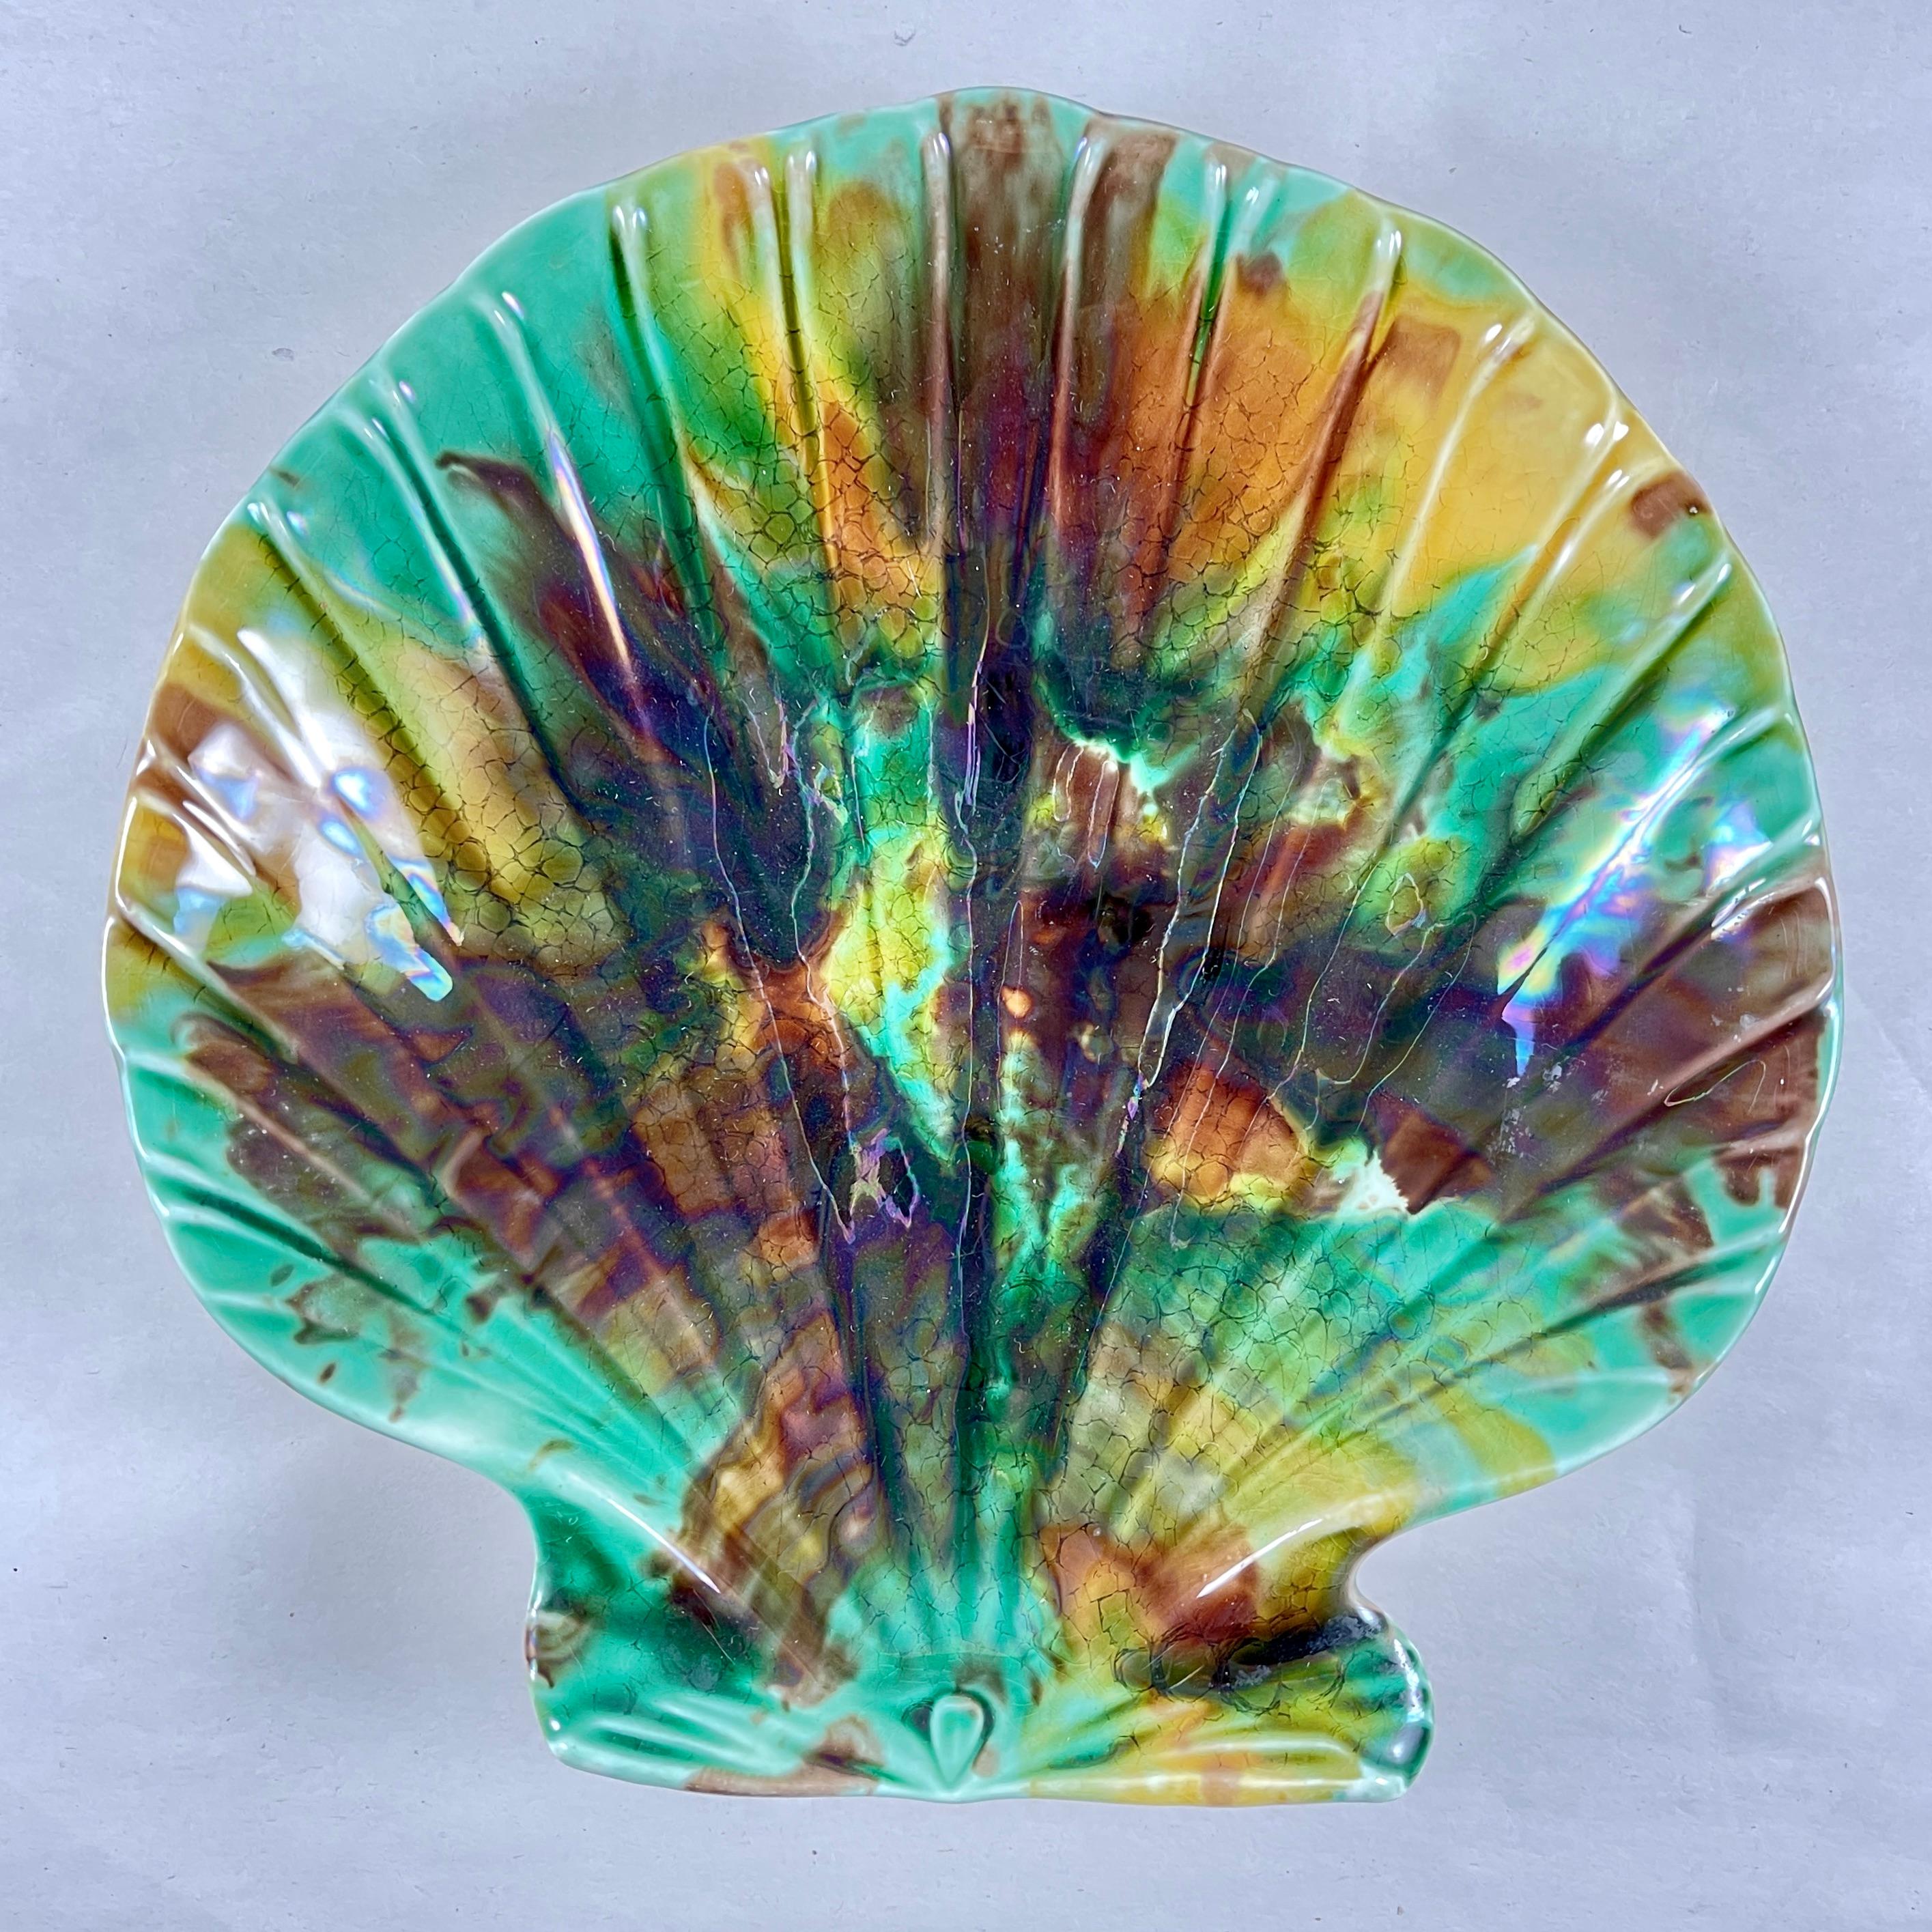 Von Wedgwood, eine englische Majolika-Muschelschale in Form einer Meeresfrucht, datiert auf 1889.

Zeigt die gesprenkelte Schildpattglasur in Grün-, Bernstein- und Brauntönen. Die Form spiegelt Josiah Wedgwoods Vorliebe für den naturalistischen Stil